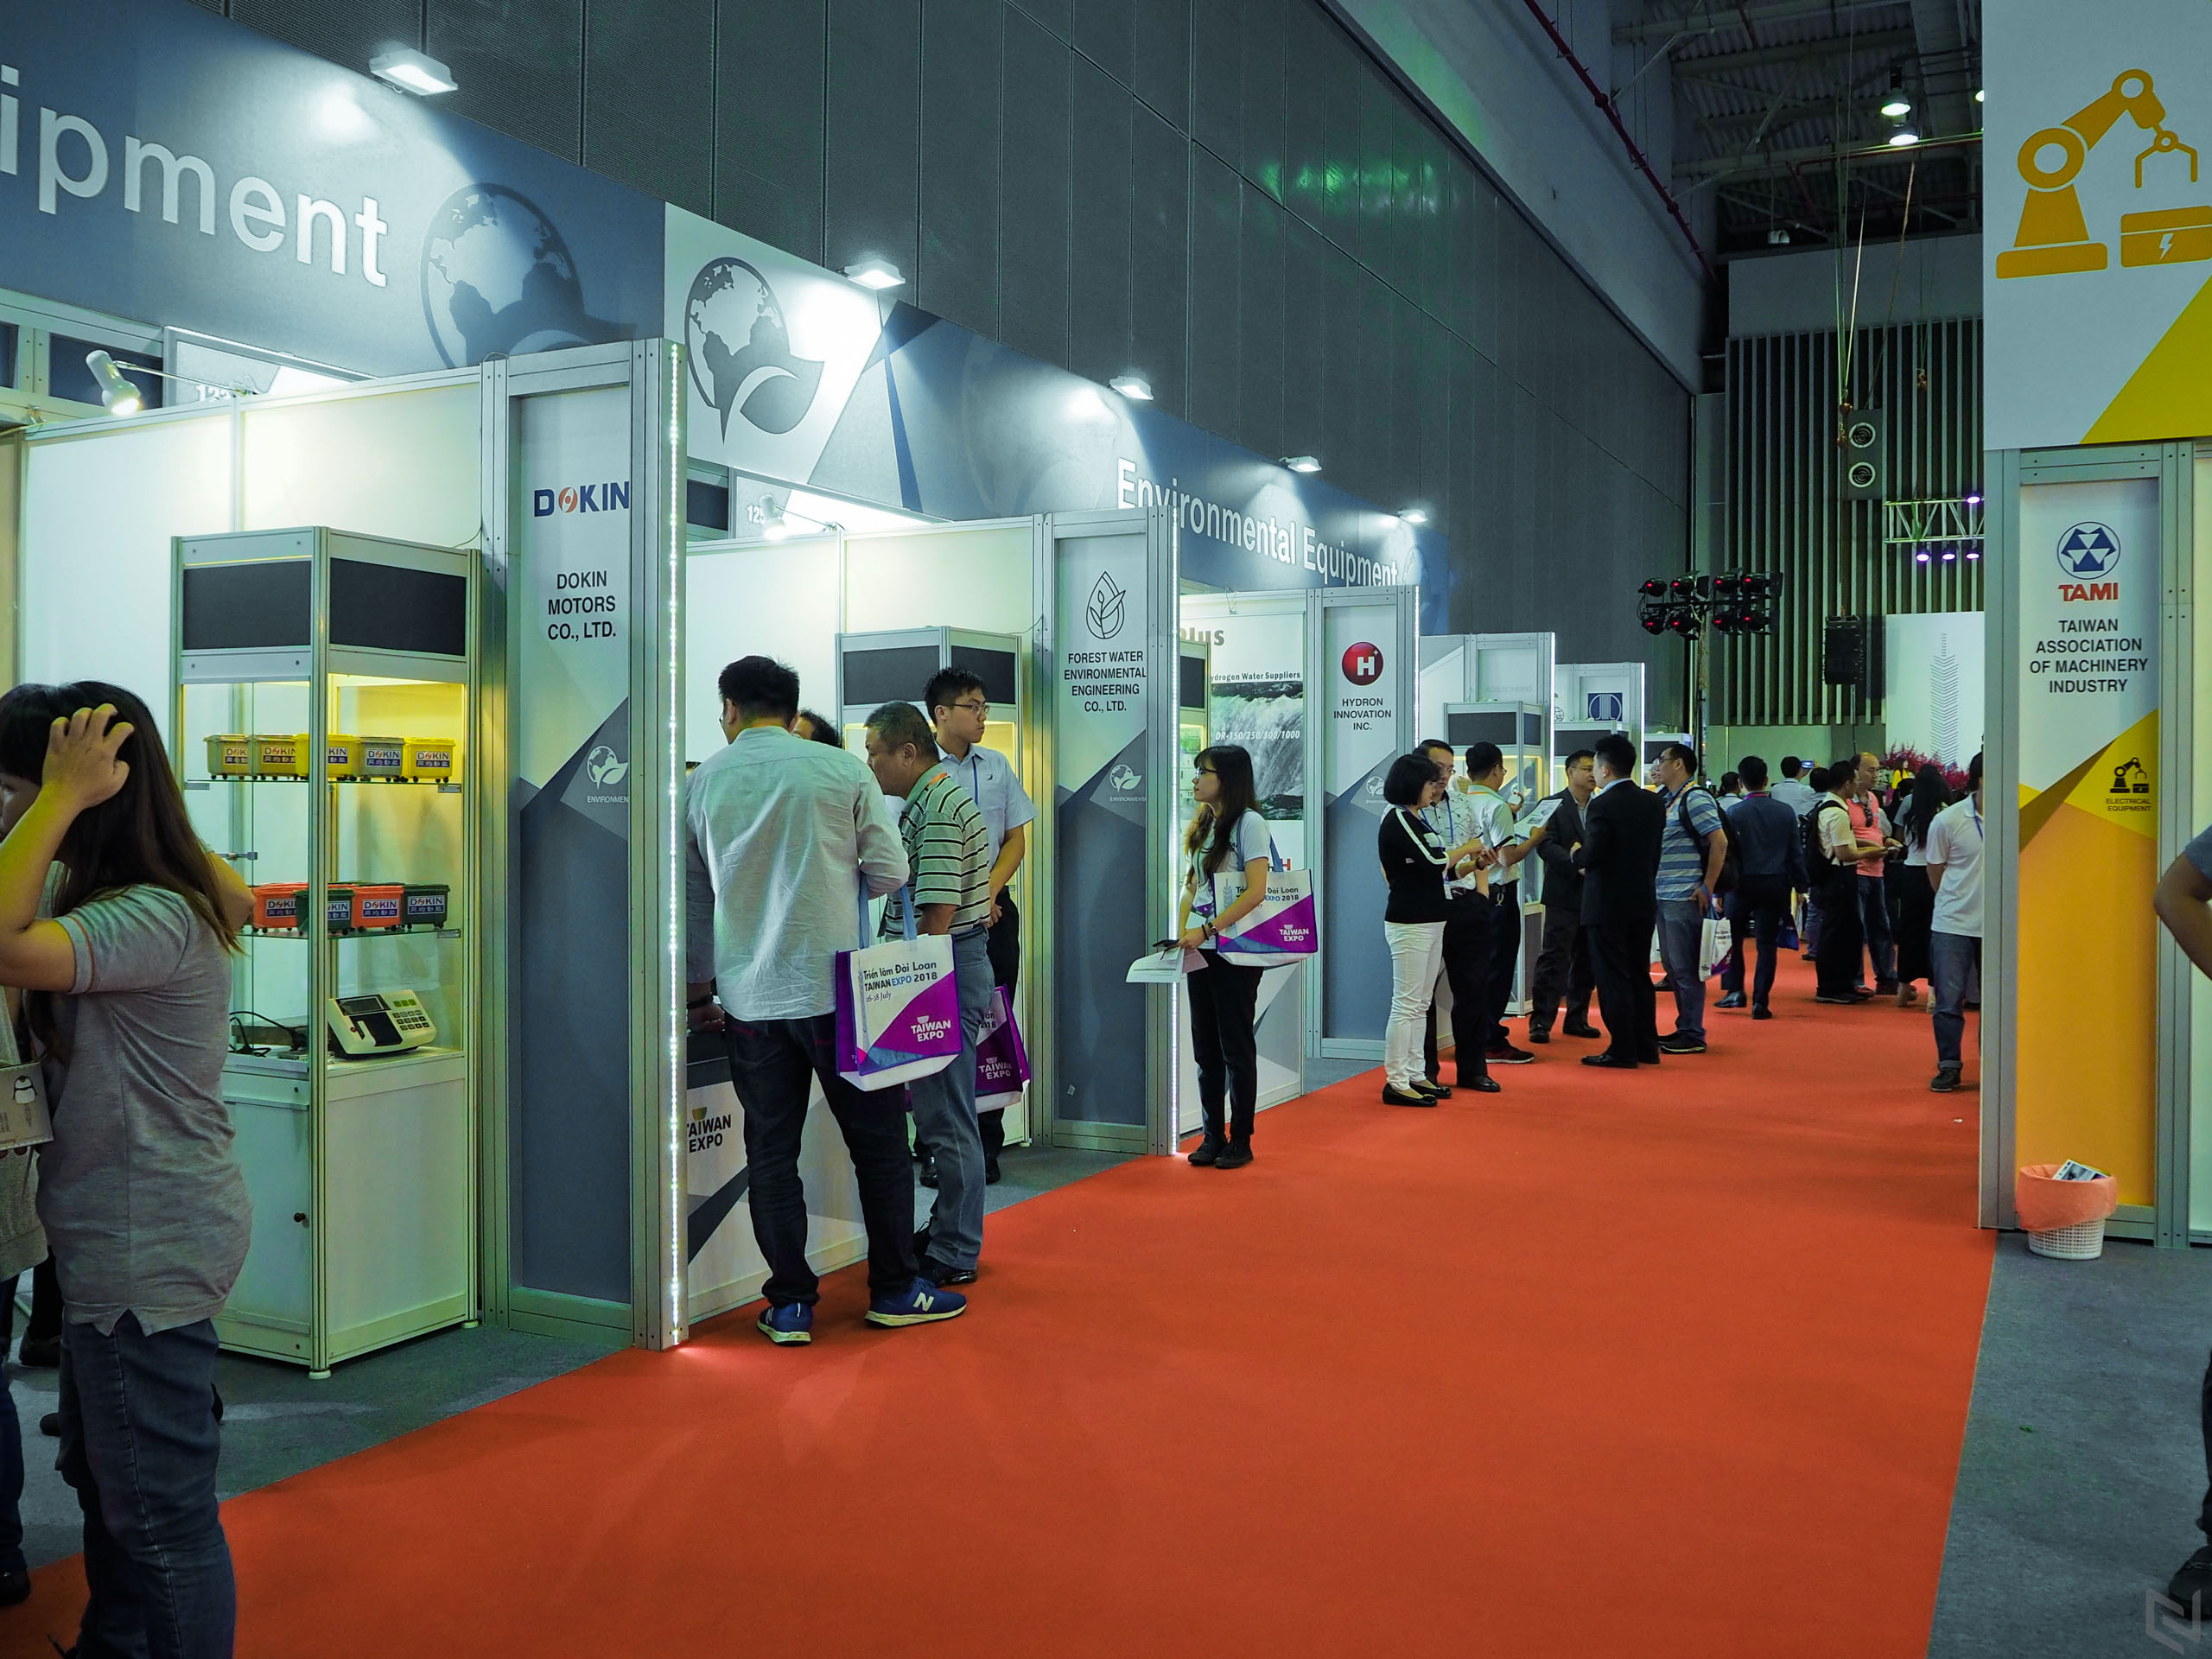 Dạo vòng Taiwan Expo 2018, Taiwan Excellence mang “Công nghệ Đài Loan cho cuộc sống thông minh”